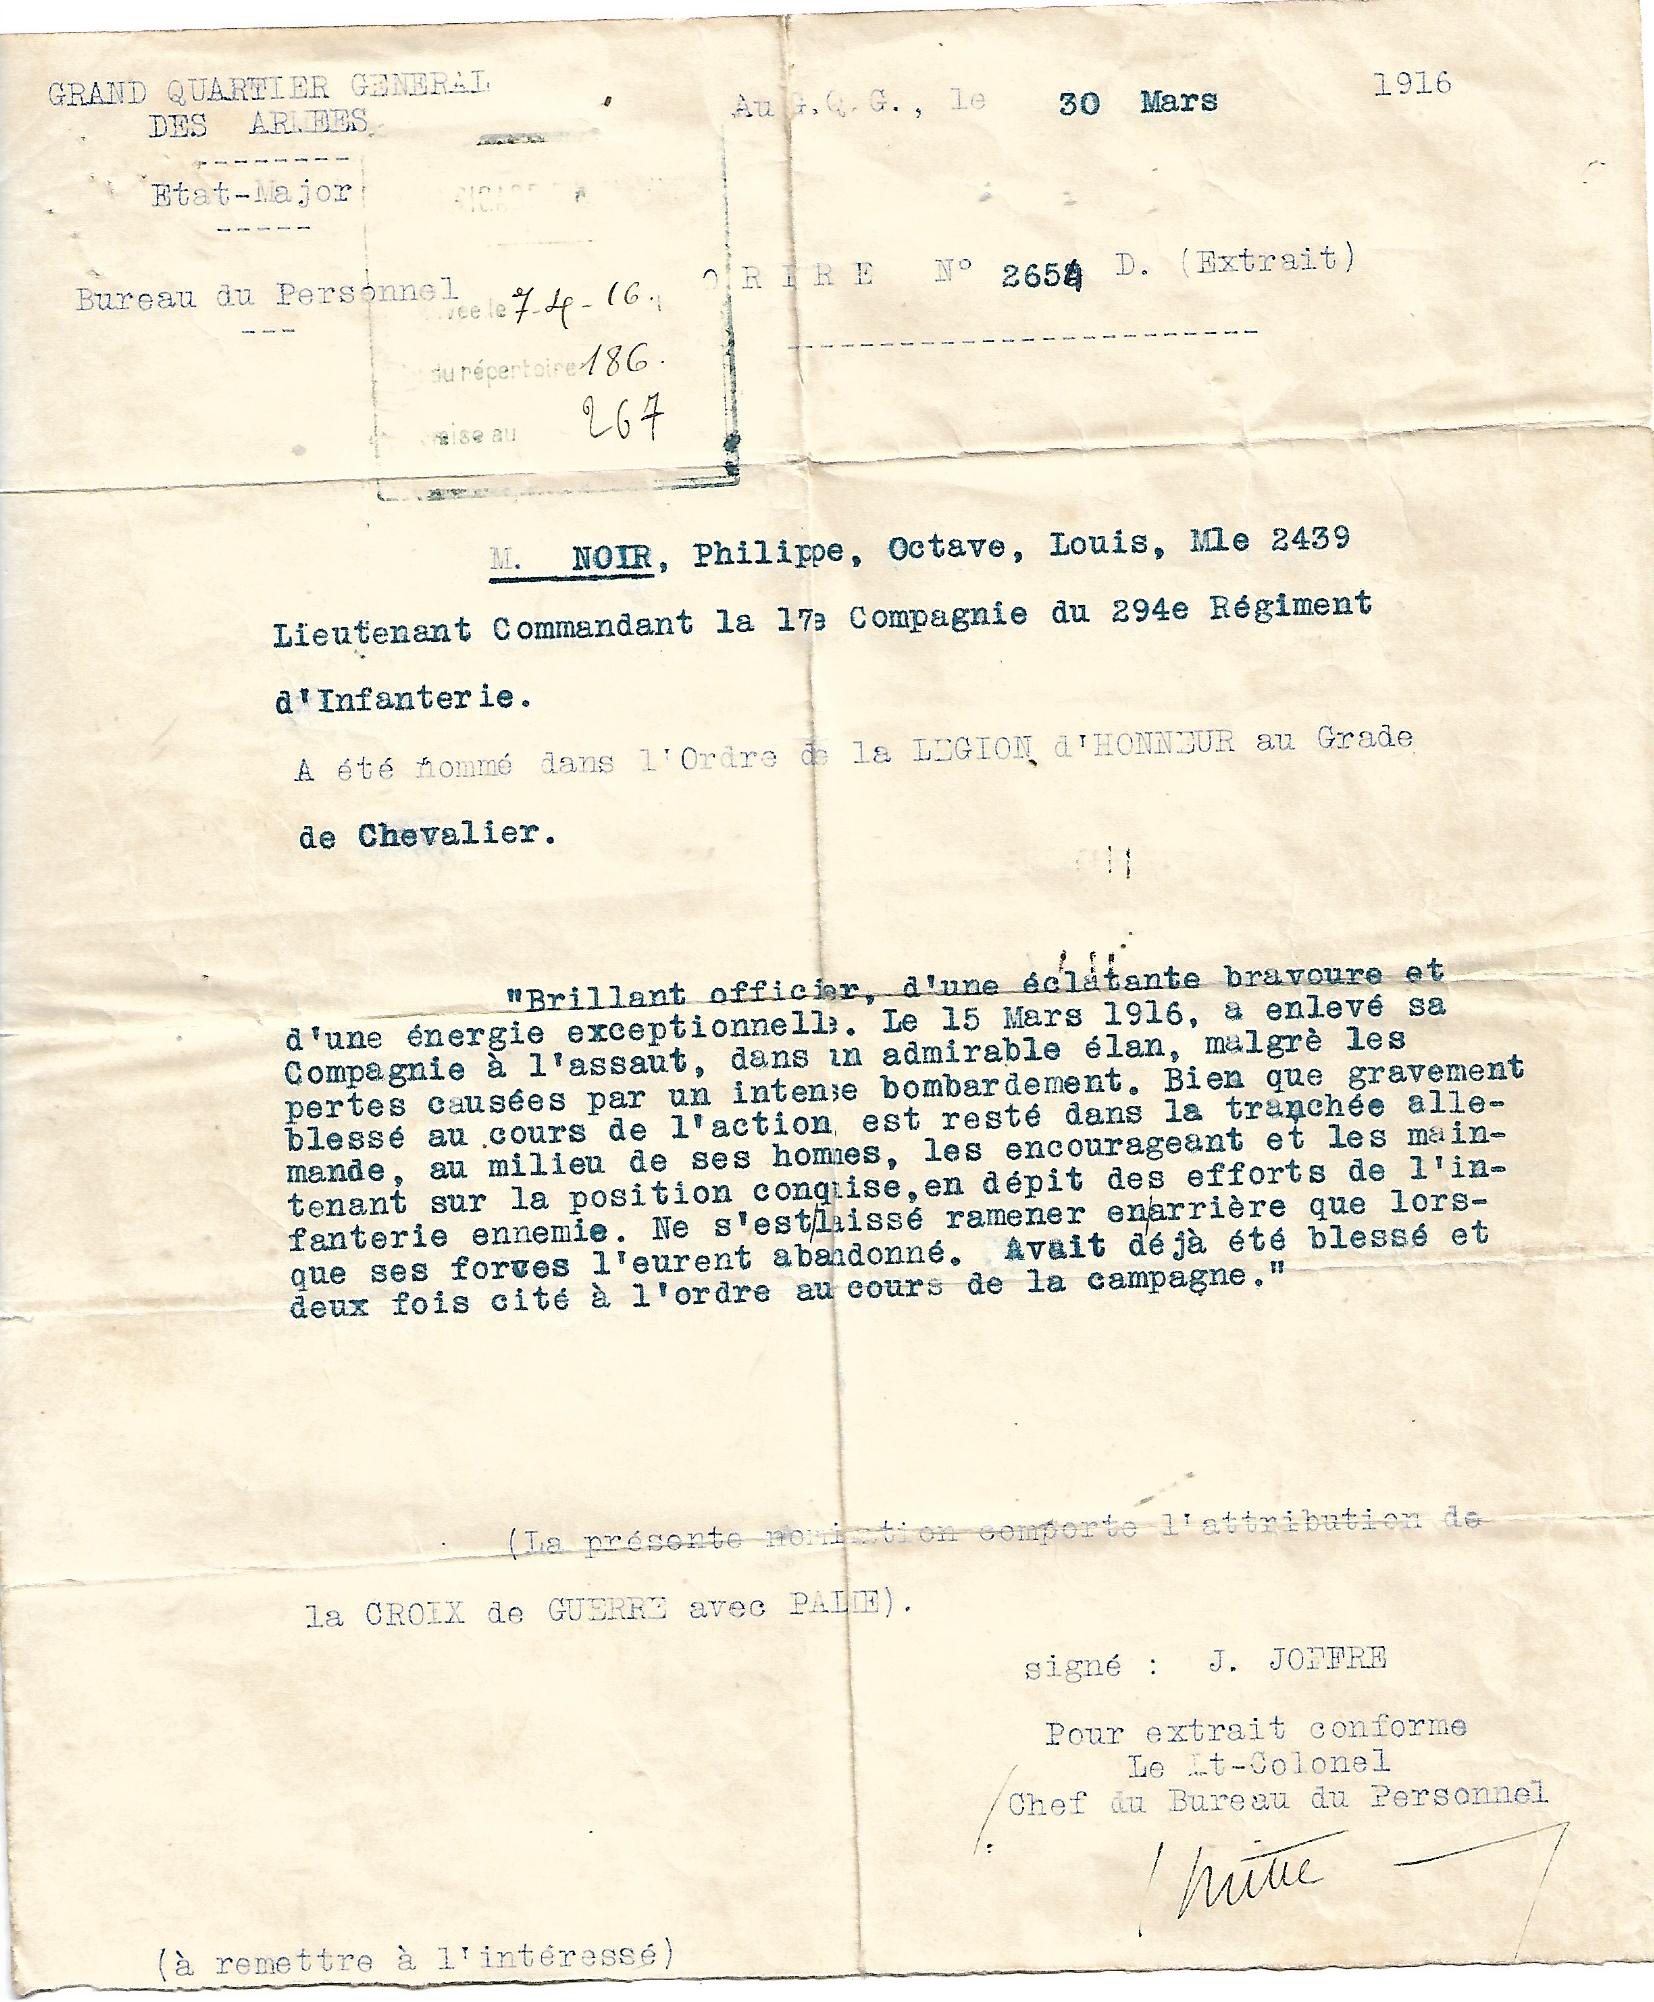 4 Octave Noir de Chazournes Légion d'Honneur 30 mars 1916.jpg